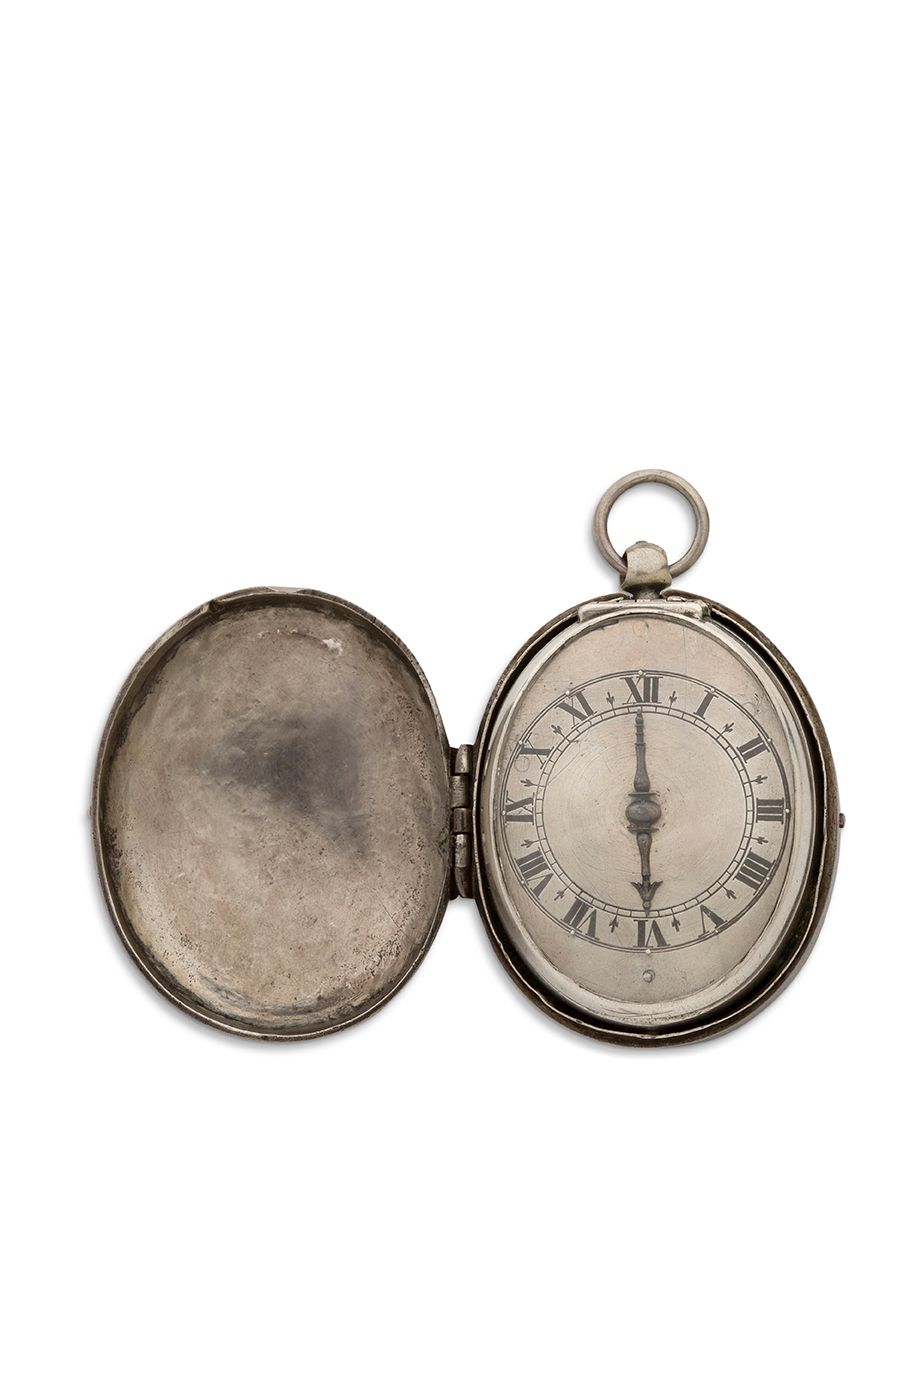 BOUQUET, Londini (Londres) 
Reloj monomando "Puritan" con doble estuche protecto&hellip;